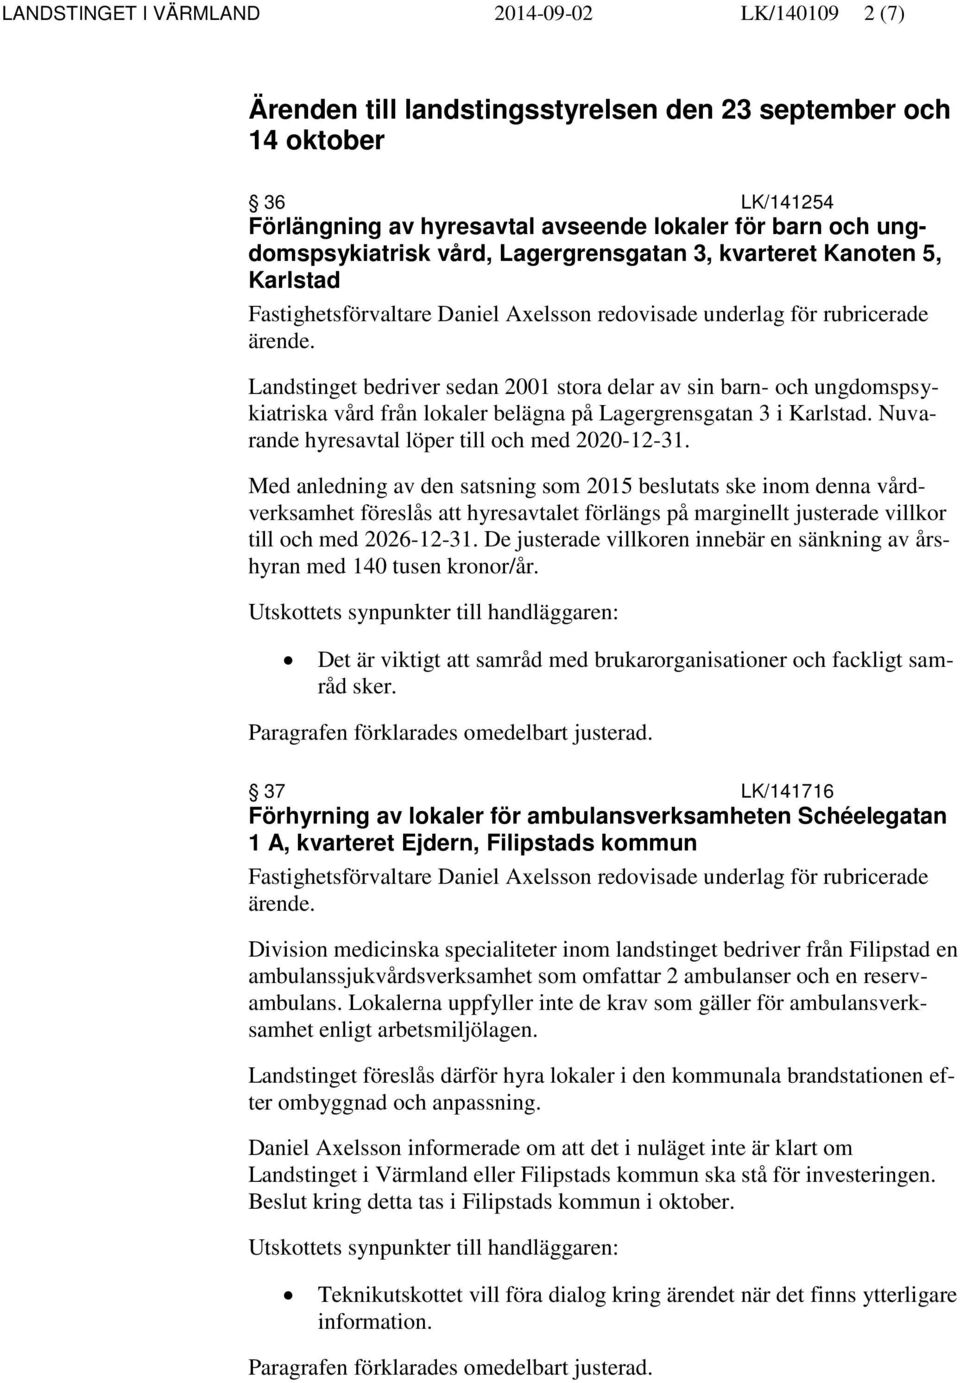 barn- och ungdomspsykiatriska vård från lokaler belägna på Lagergrensgatan 3 i Karlstad. Nuvarande hyresavtal löper till och med 2020-12-31.